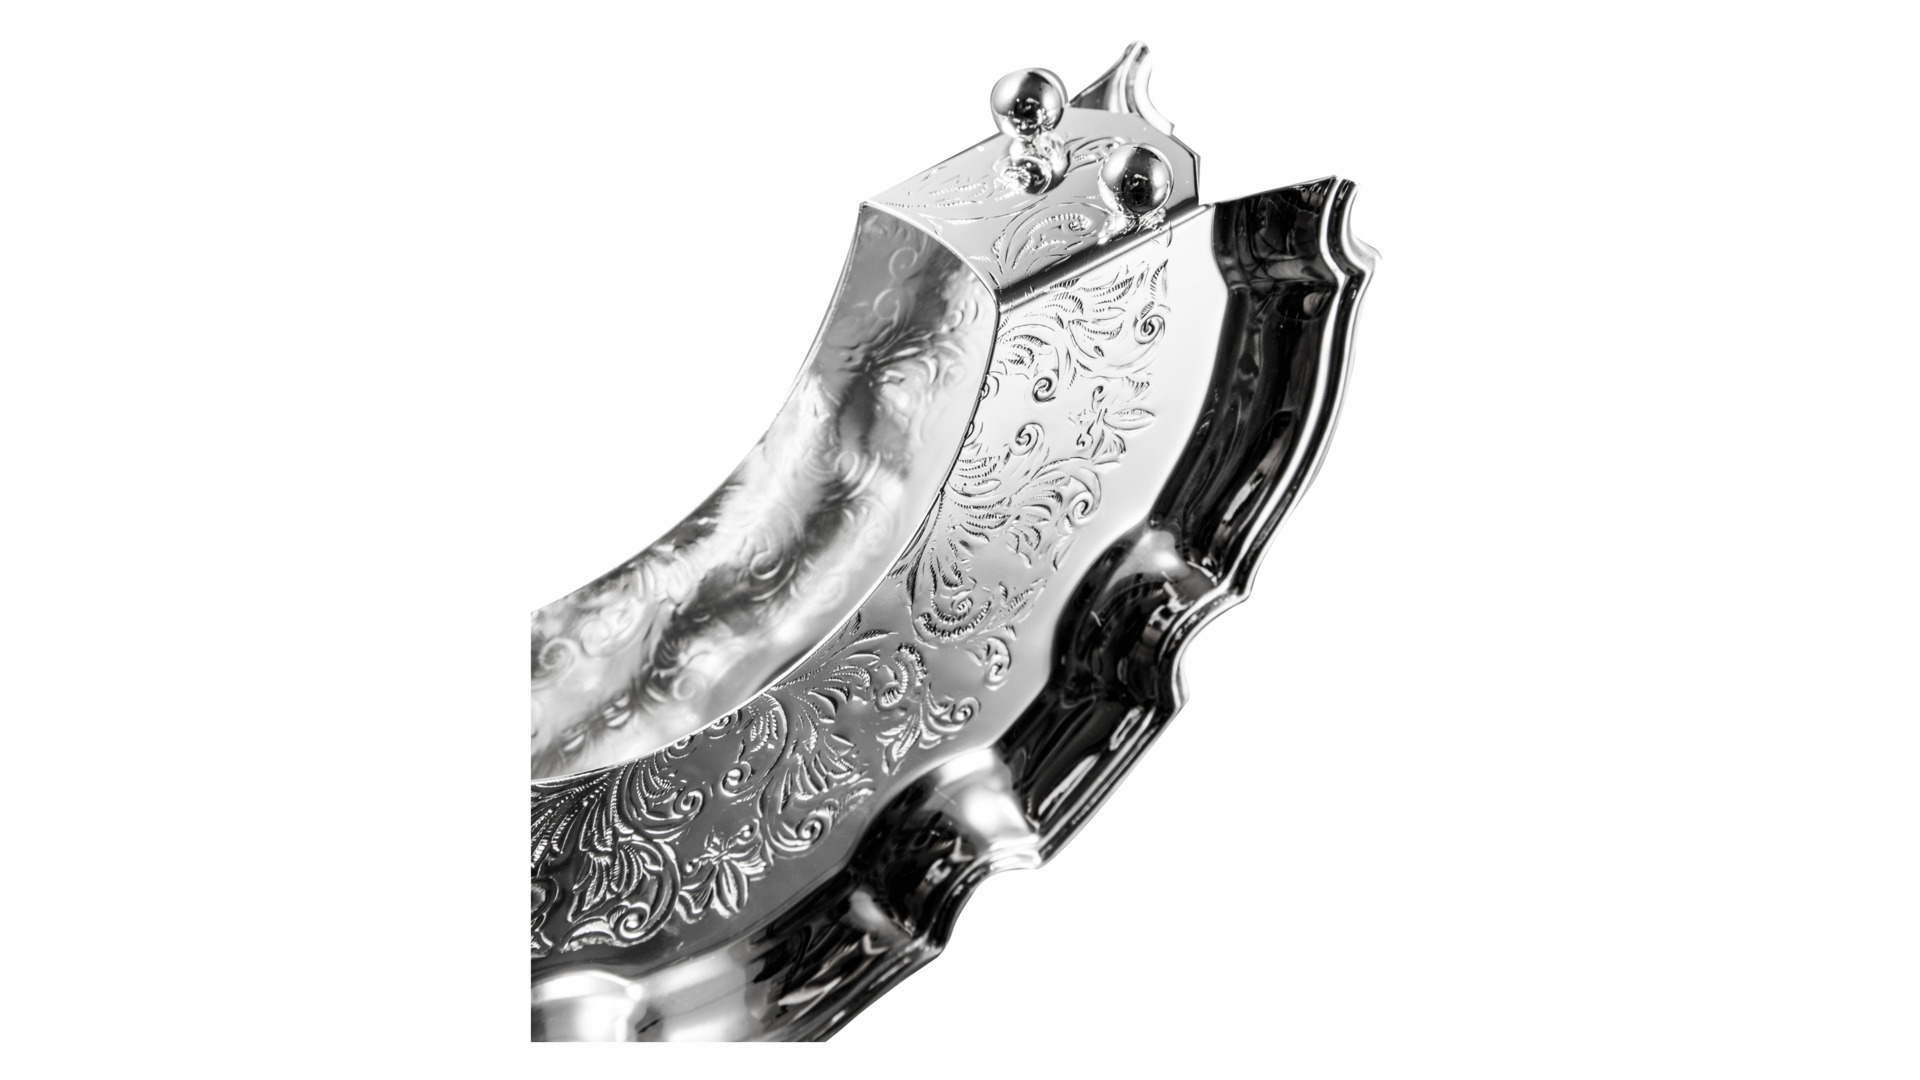 Салфетница Queen Anne Чиппендейл 17 см, сталь, посеребрение